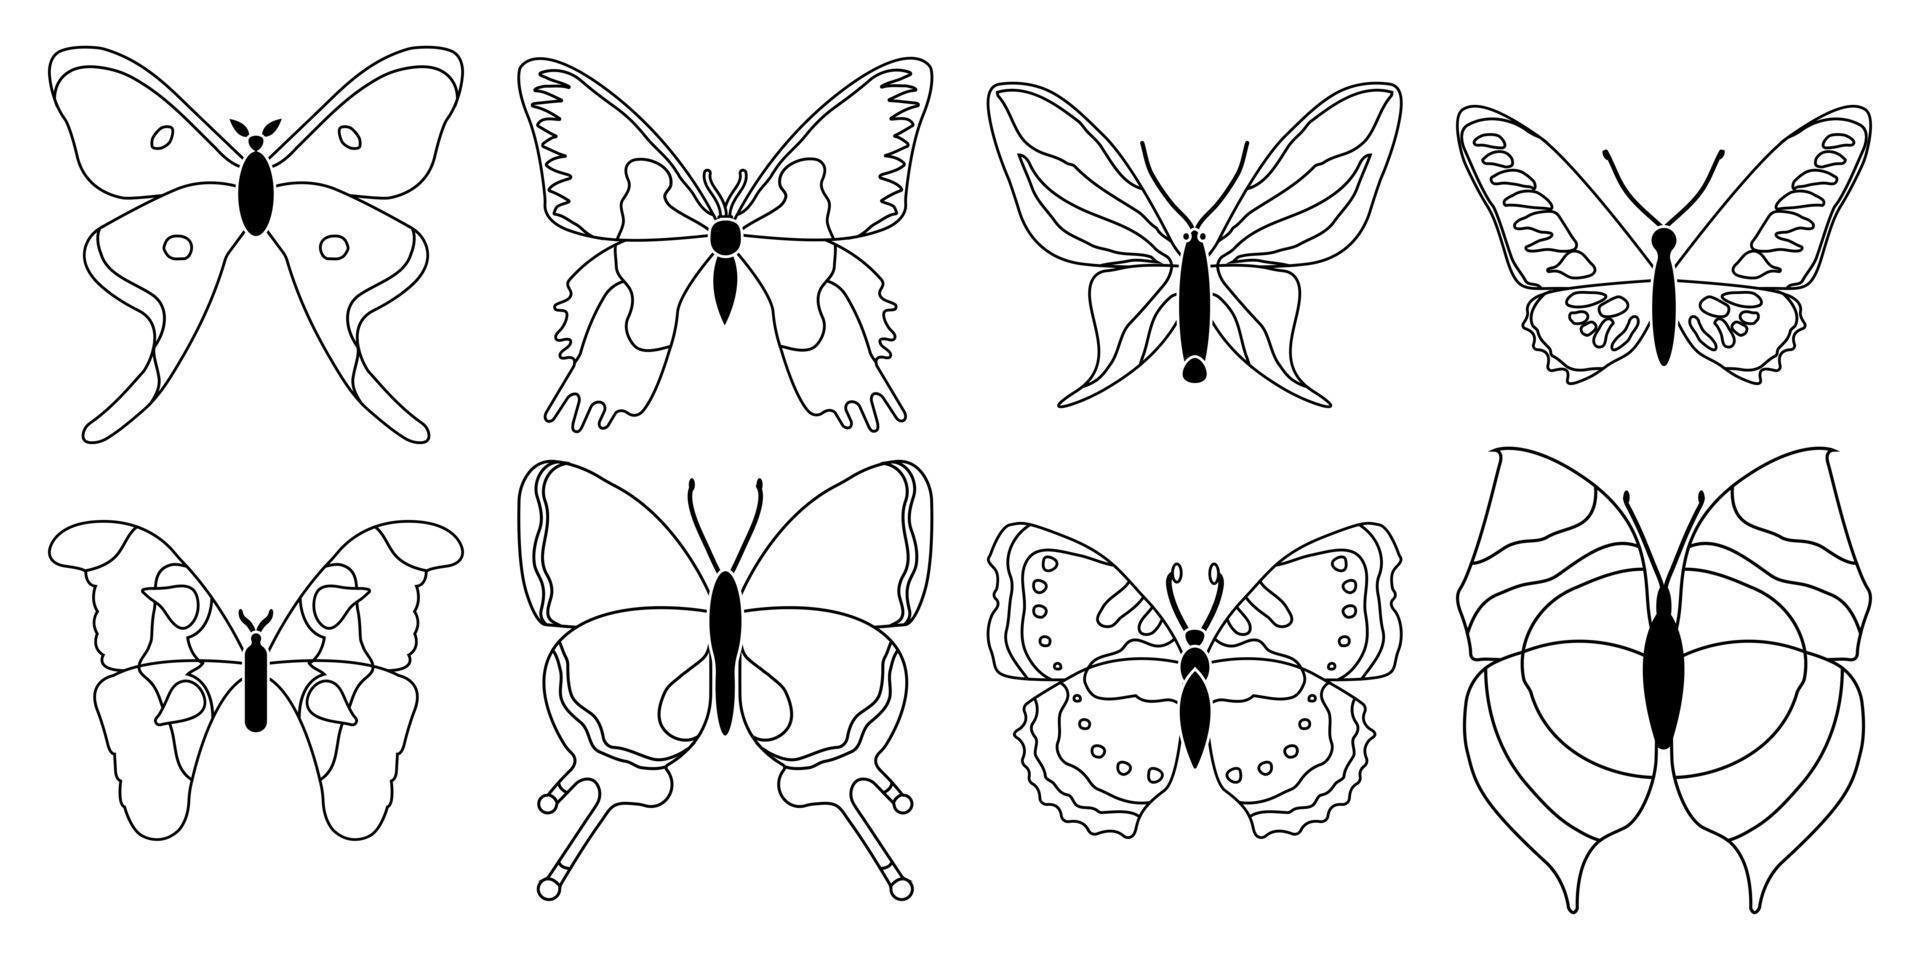 conjunto vetorial de borboletas em um fundo branco, desenhando insetos decorativos, silhuetas desenhadas à mão, vetor isolado